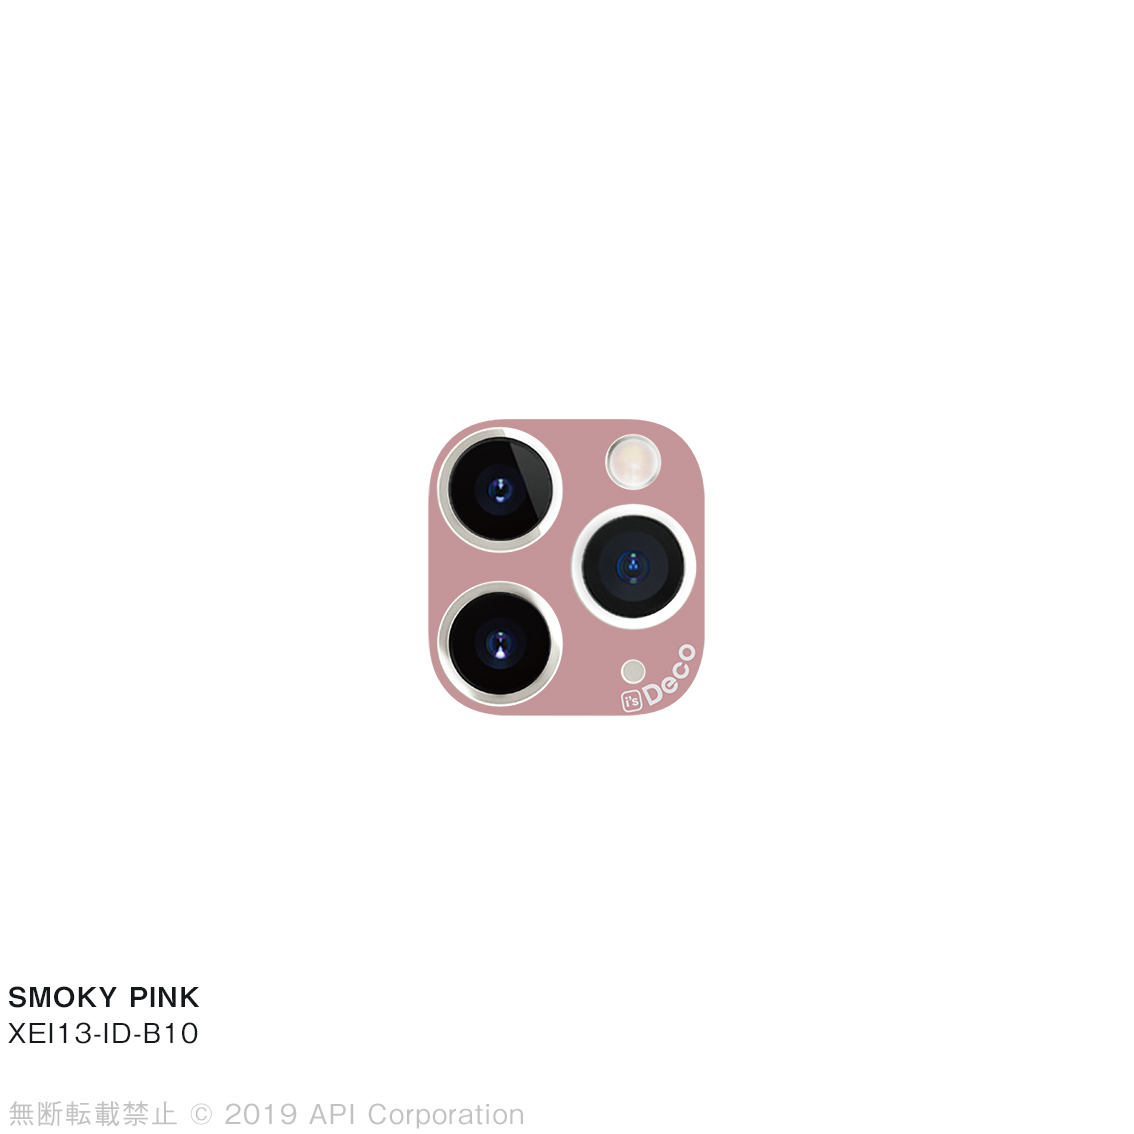 iPhone 11 Pro/11 Pro Max  i's Deco  [STANDARD COLOR (B09-B12)］